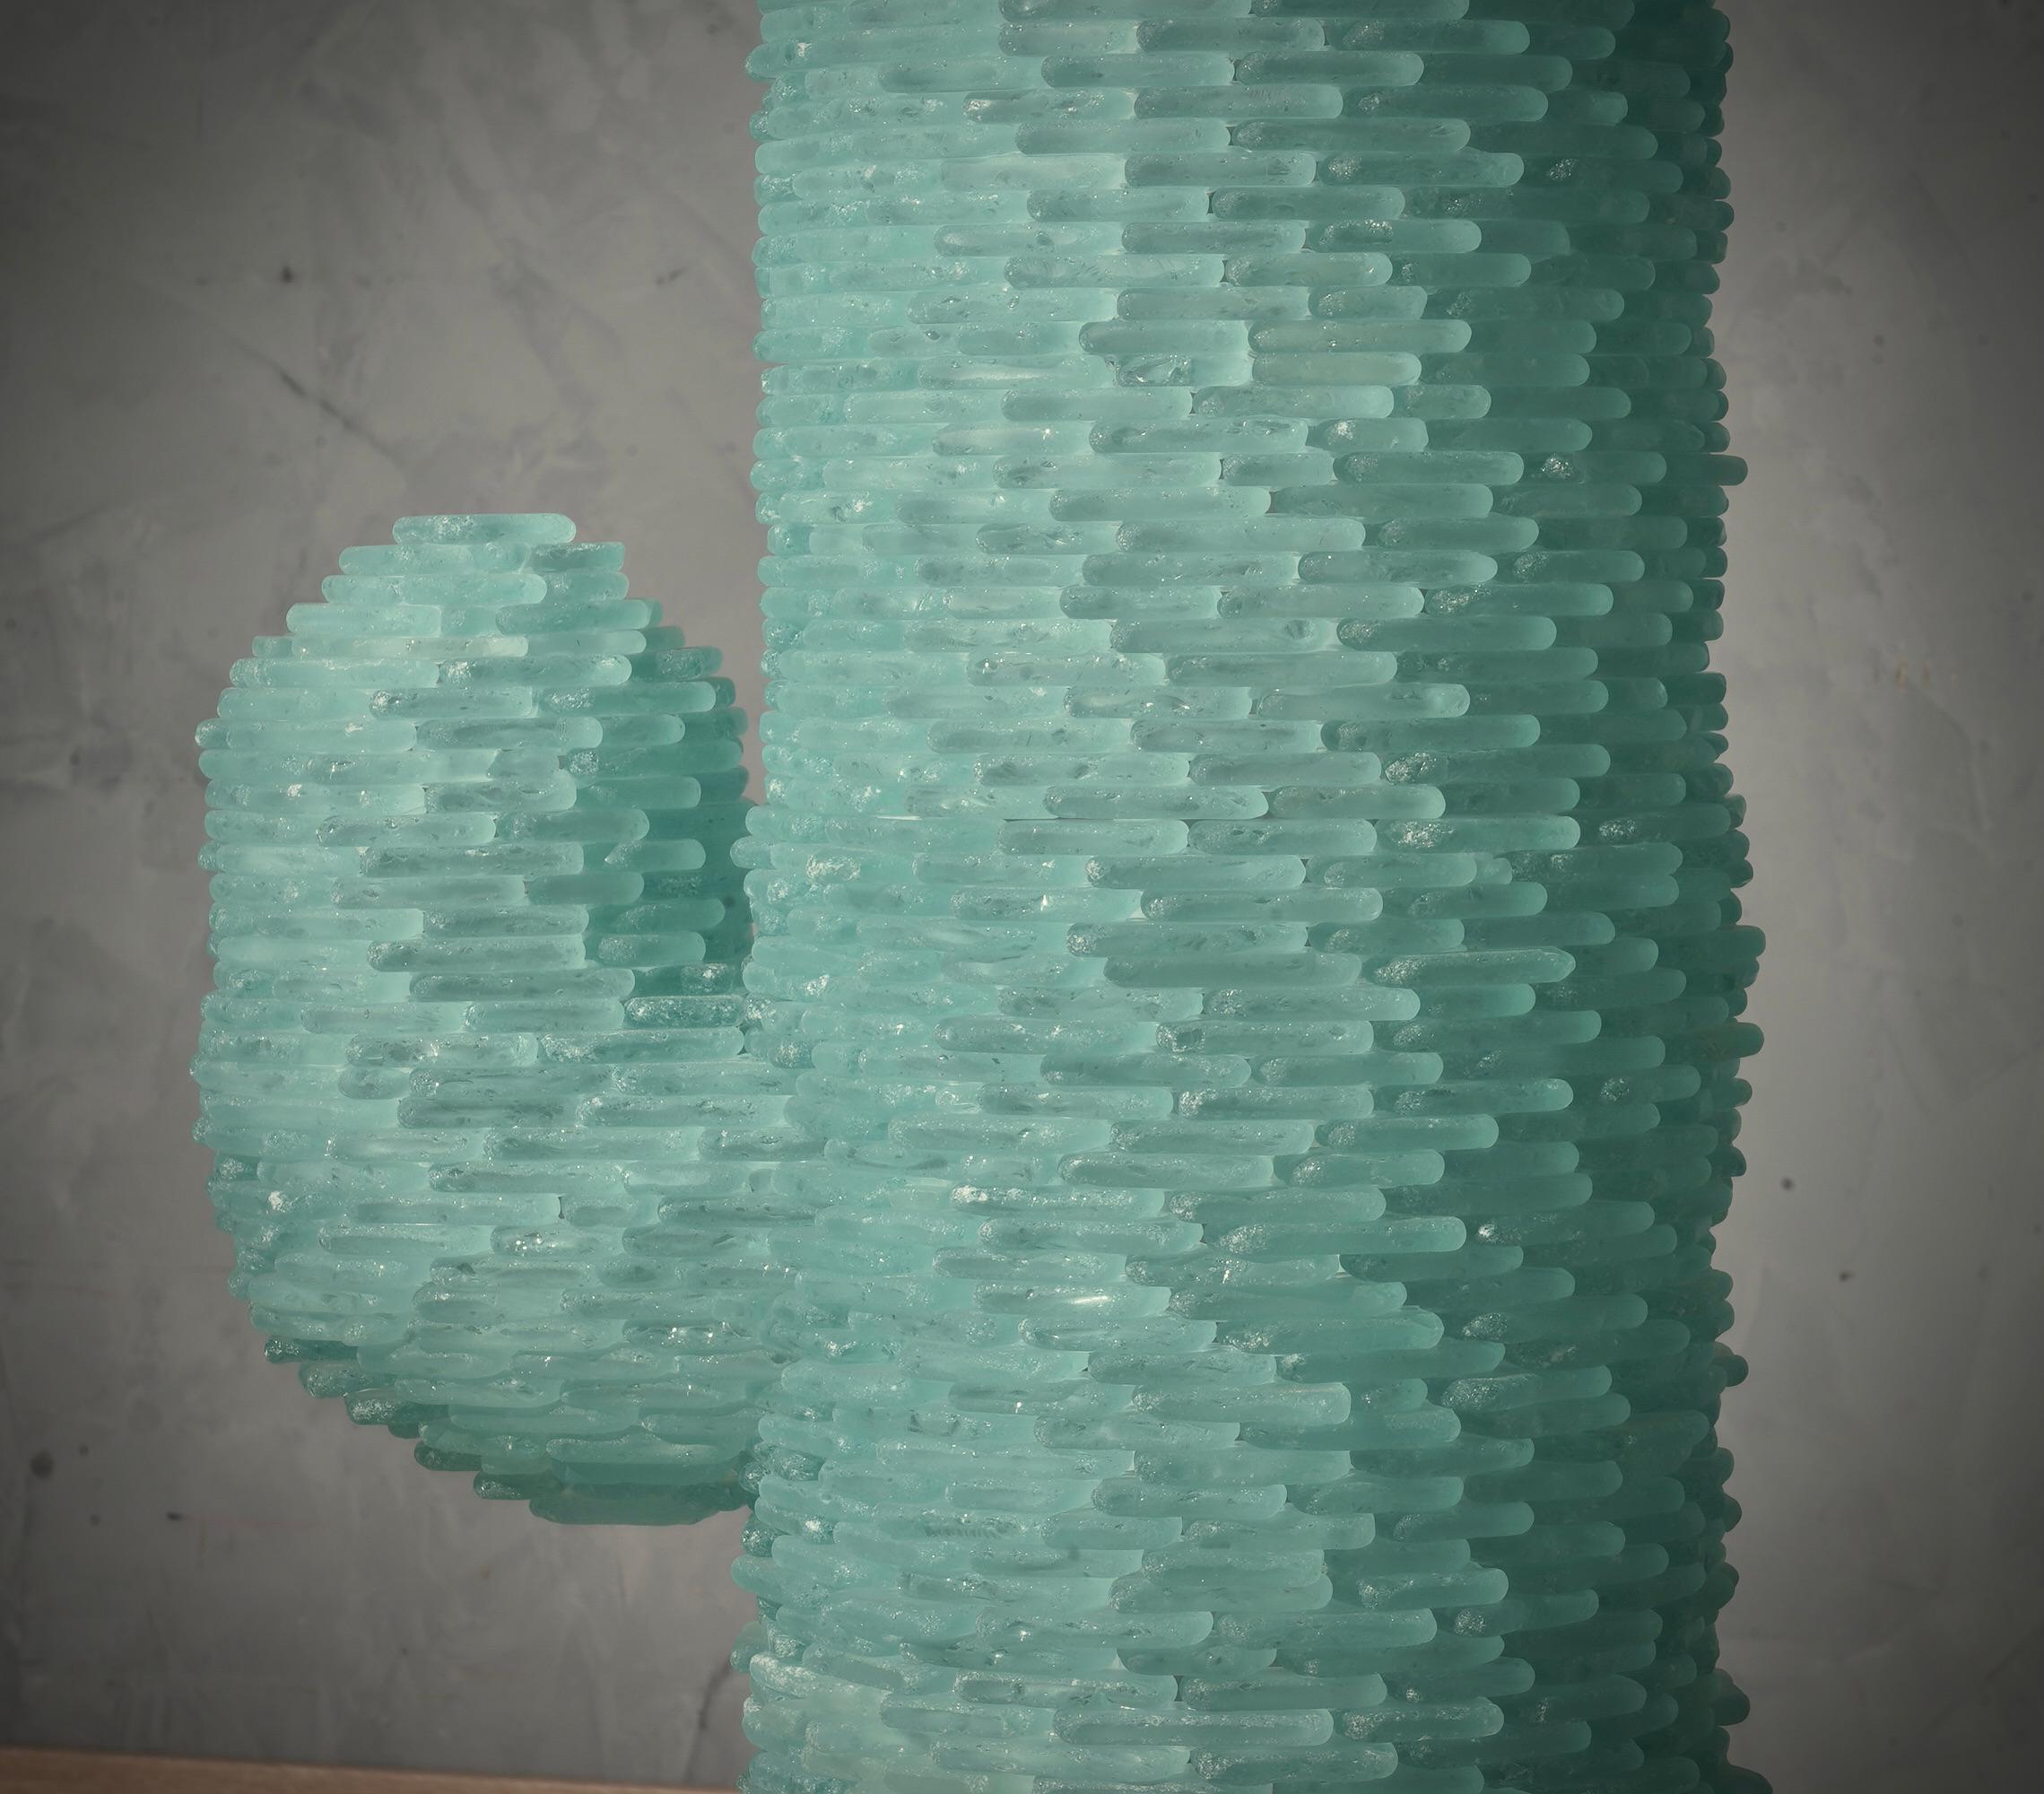 Splendide sculpture lumineuse entièrement en très fines plaques de verre de Murano d'une splendide couleur vert d'eau de mer.

Plus qu'un lampadaire, il s'agit d'une sculpture de cactus composée de petits morceaux de verre de Murano de couleur vert